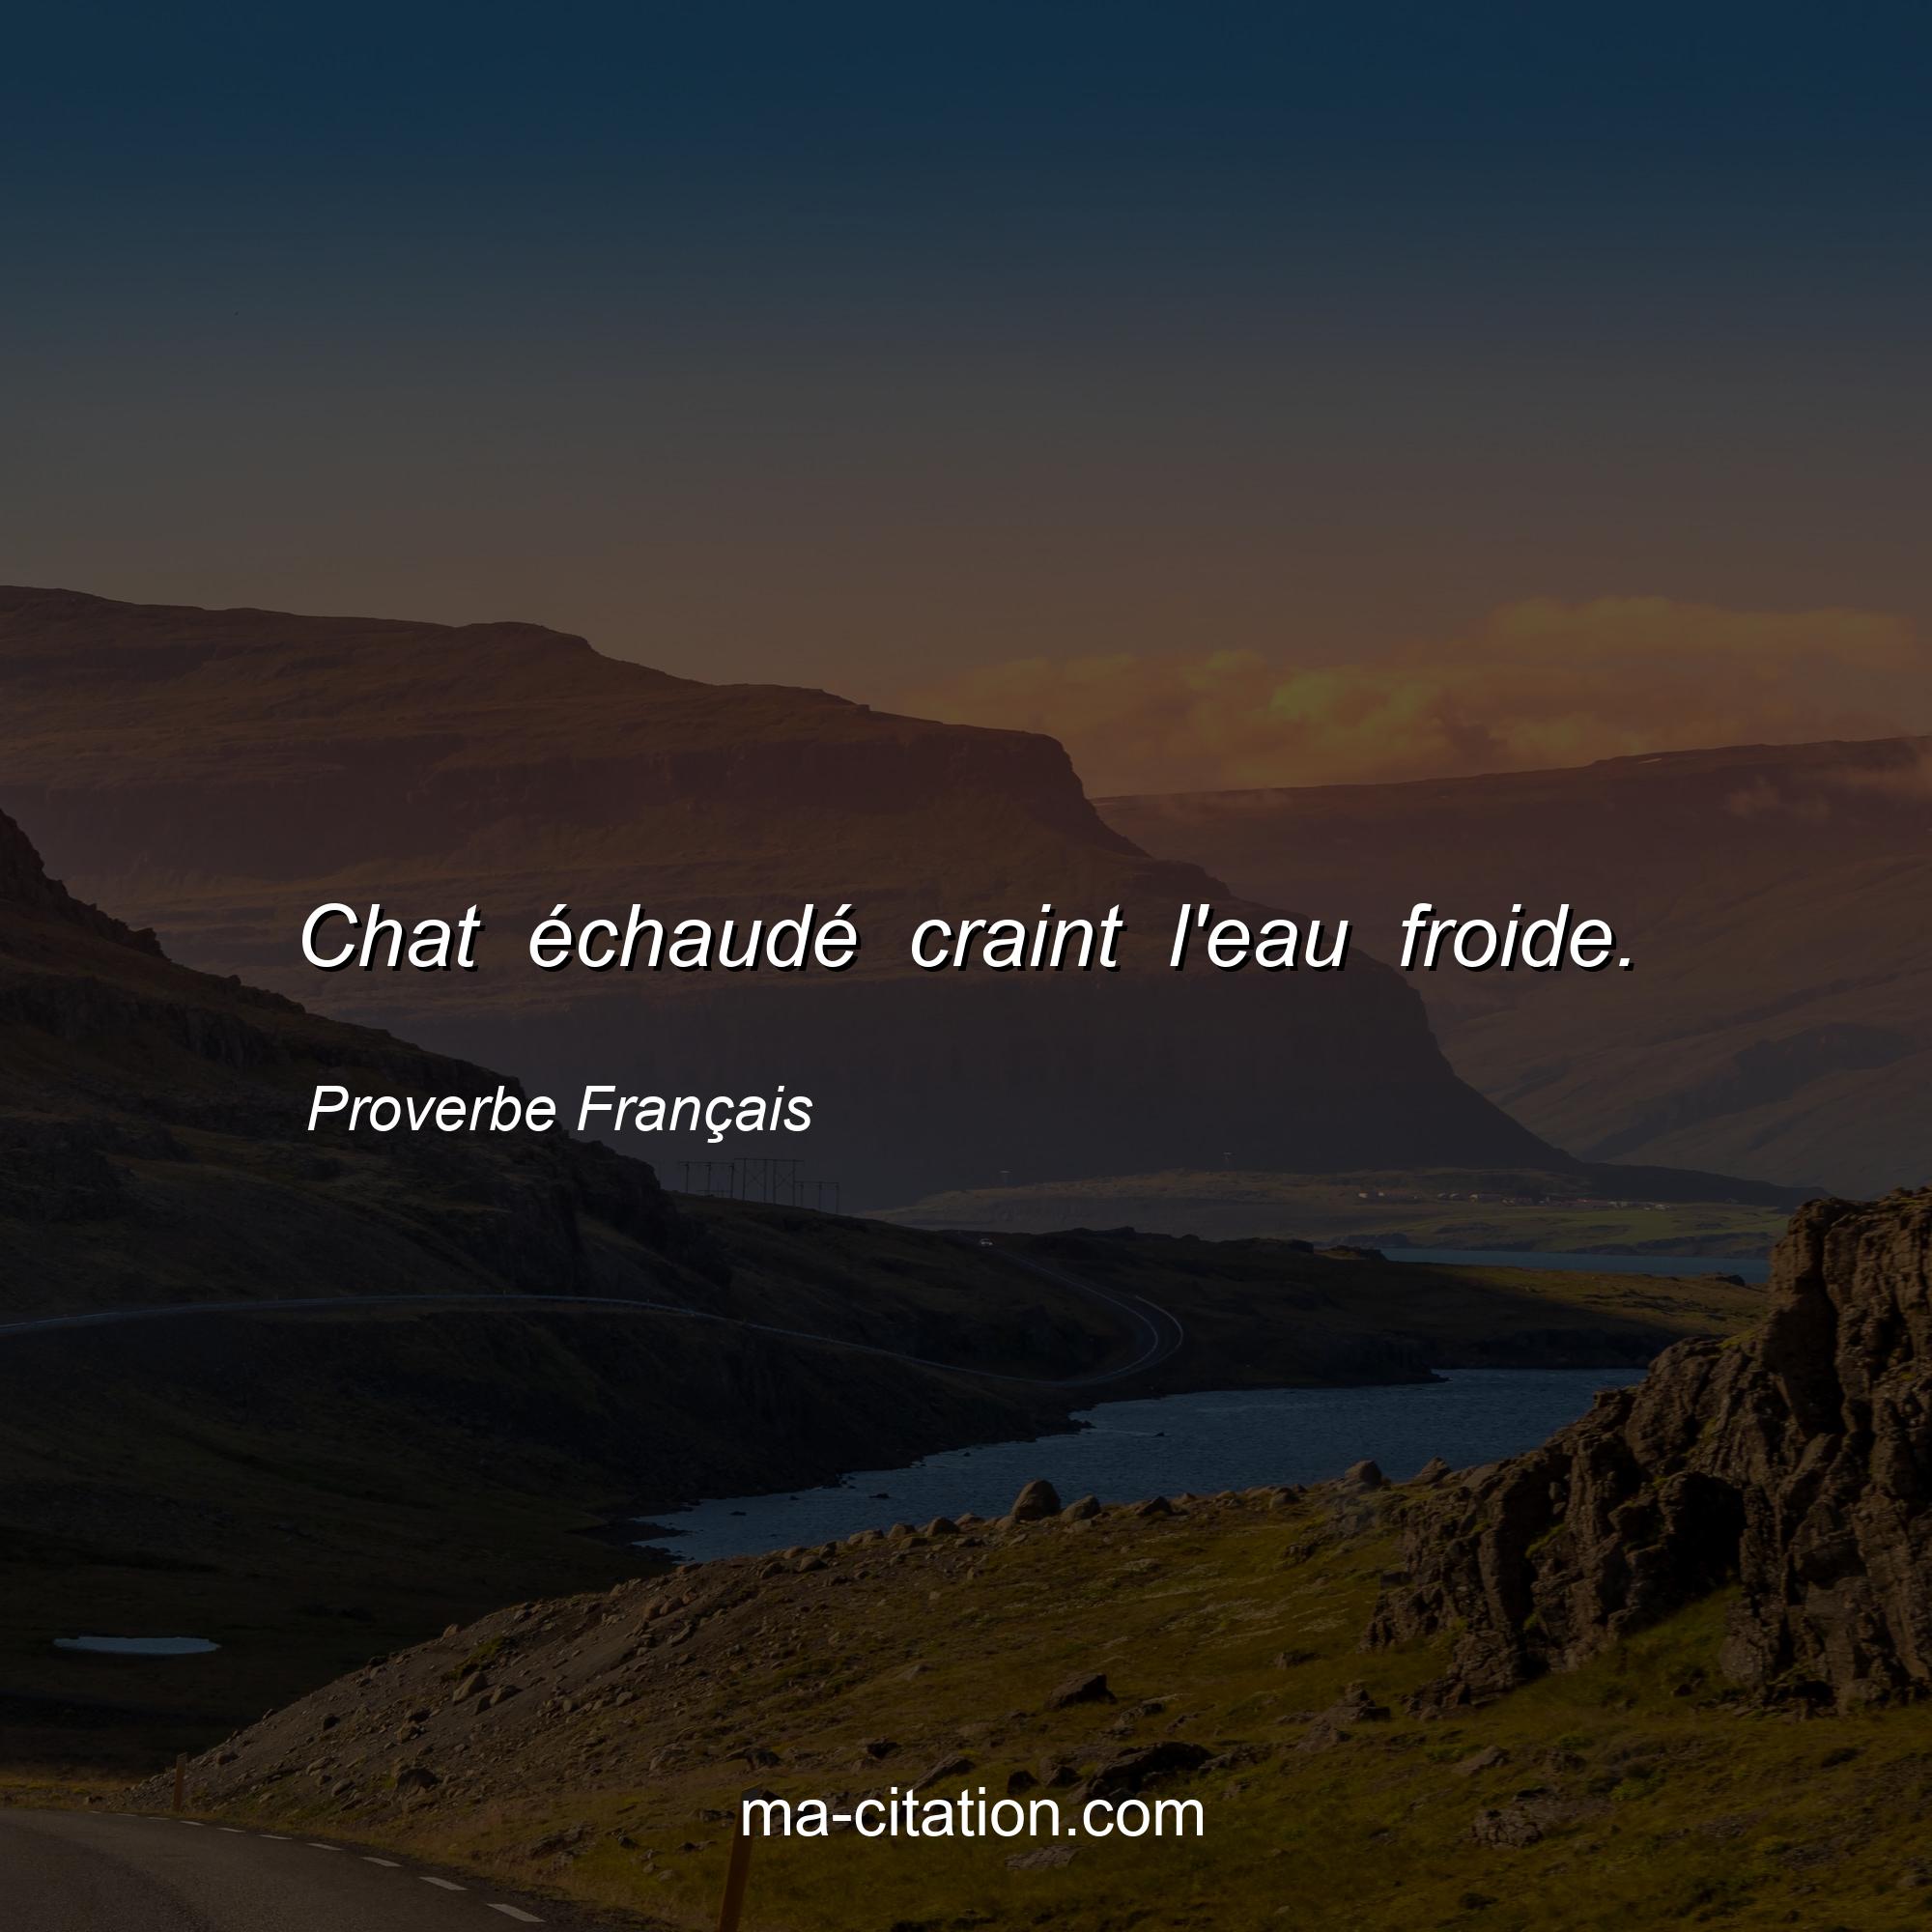 Proverbe Français : Chat échaudé craint l'eau froide.